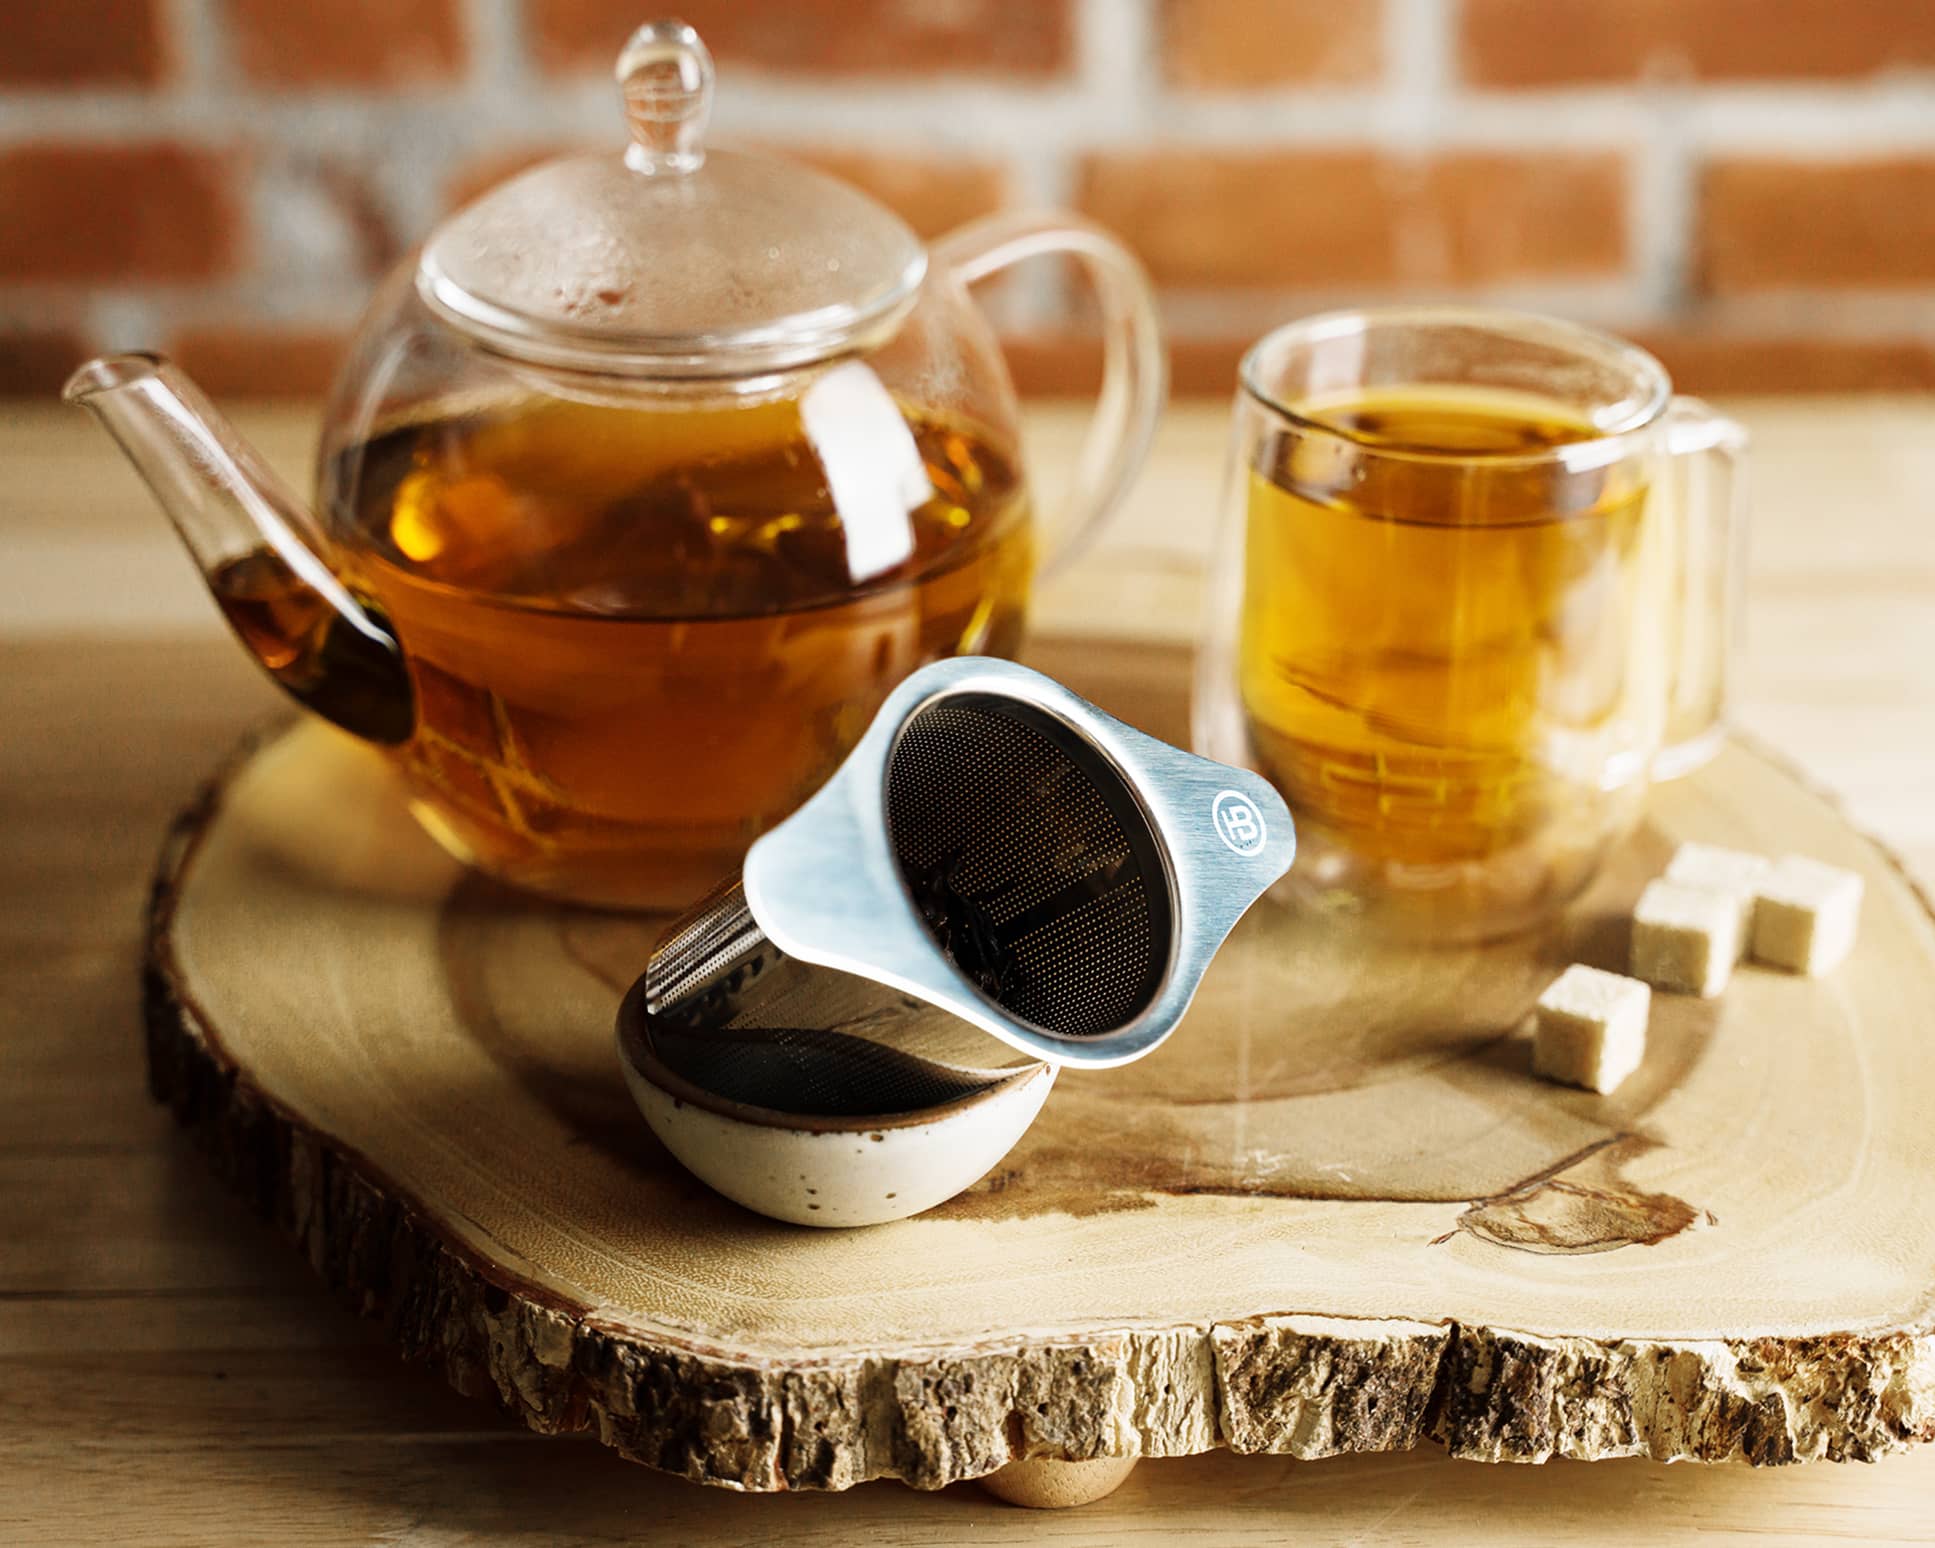 Mesh Tea Infuser with a glass tea pot and glass mug